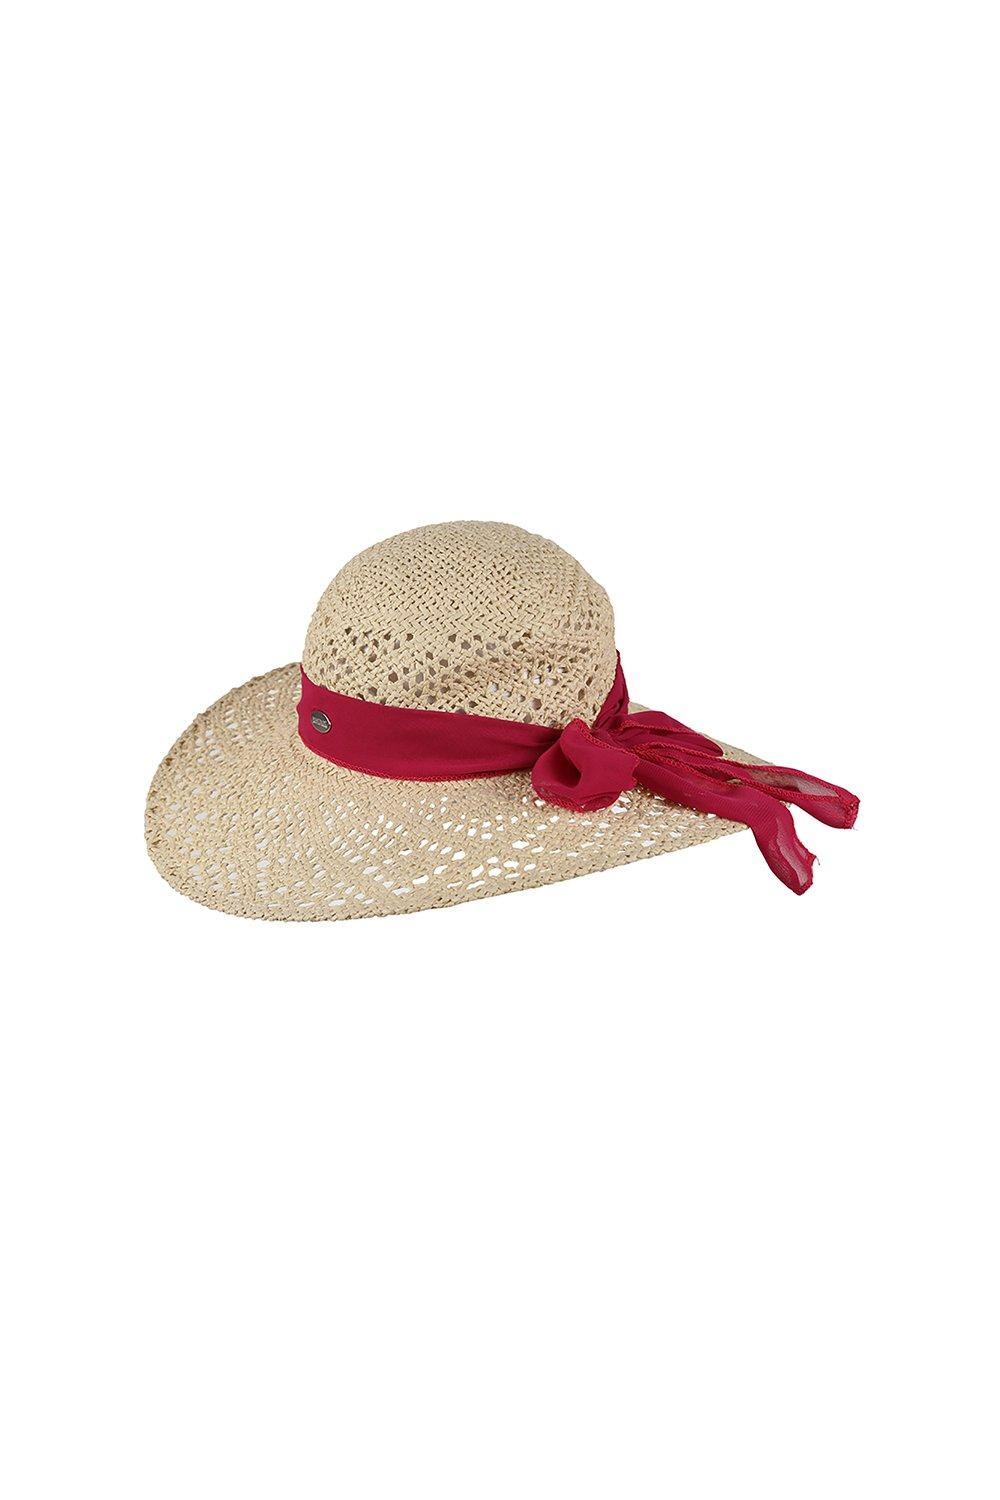 'Taura III' Соломенная бумажная шляпа от солнца Regatta, белый персонализированная широкополая фетровая шляпа портативная дышащая унисекс шляпа женская шляпа ковбойская шляпа